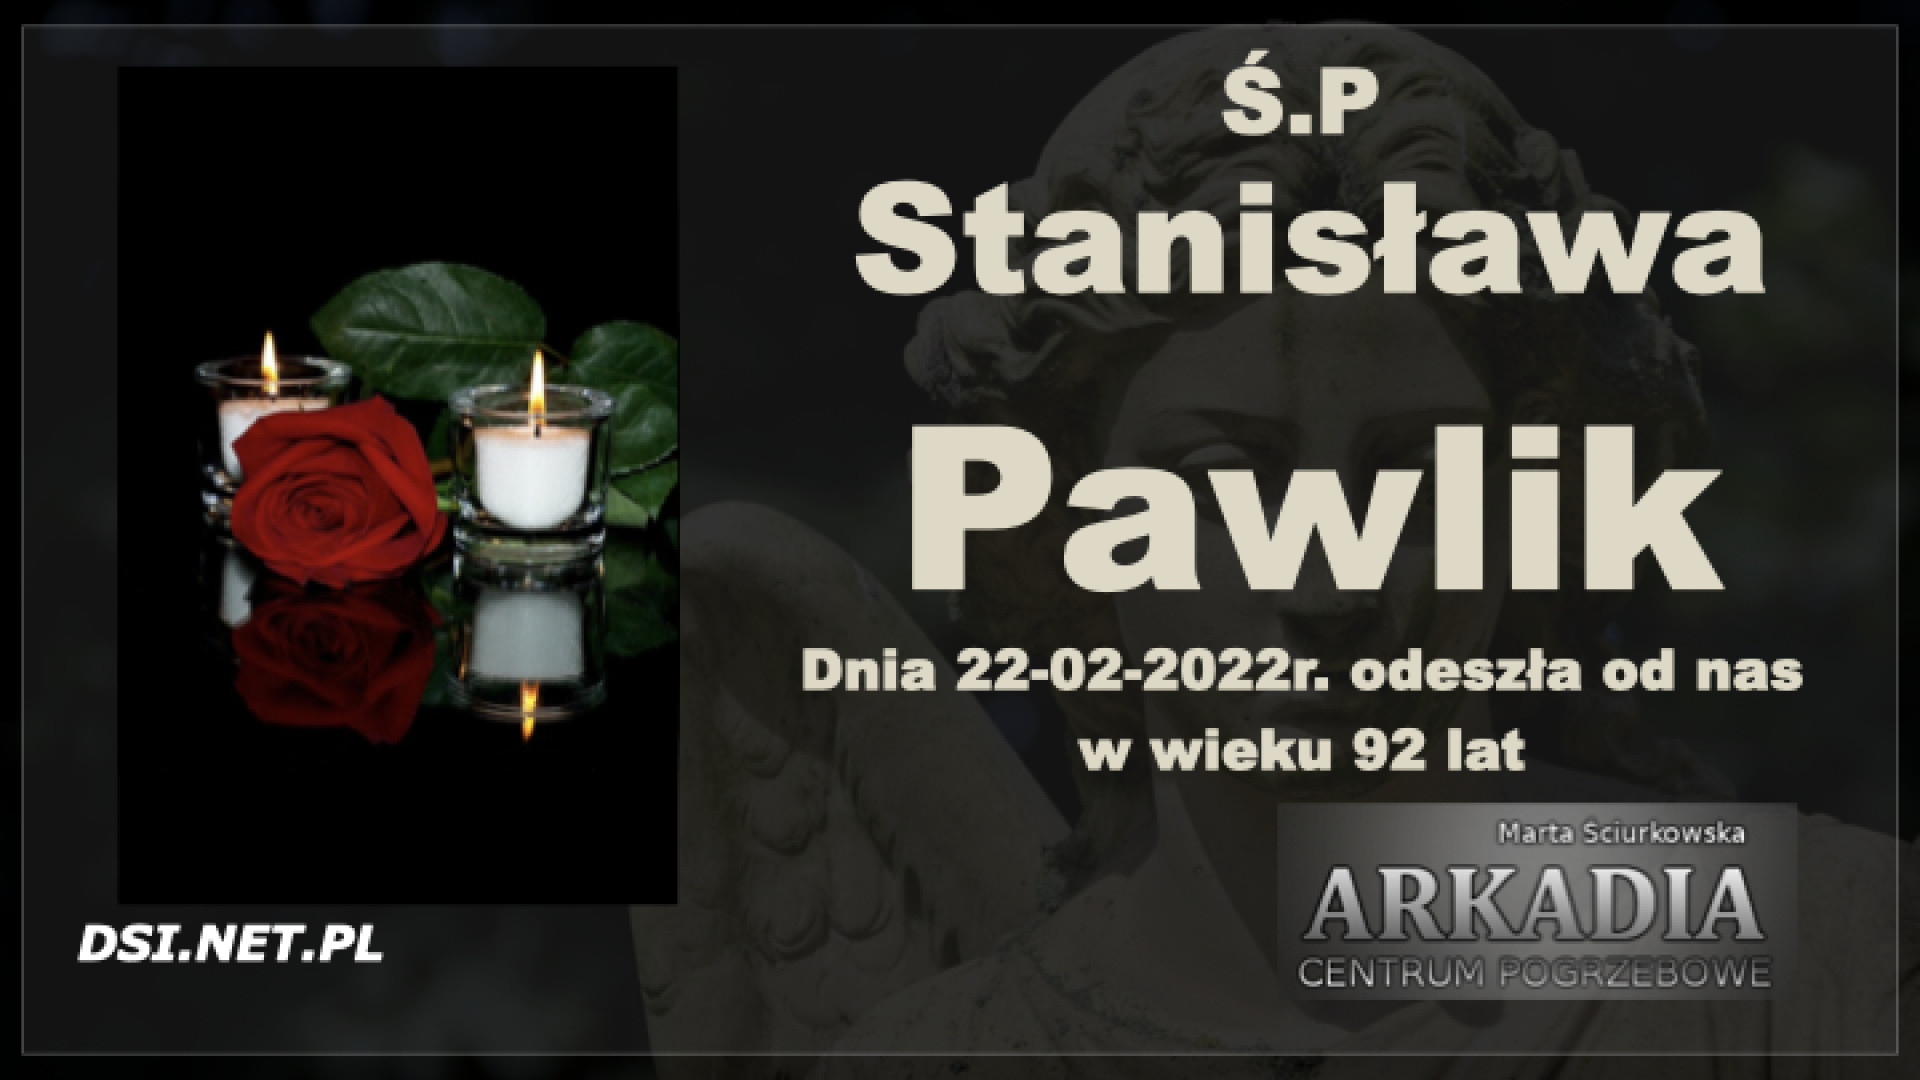 Ś.P. Stanisława Pawlik